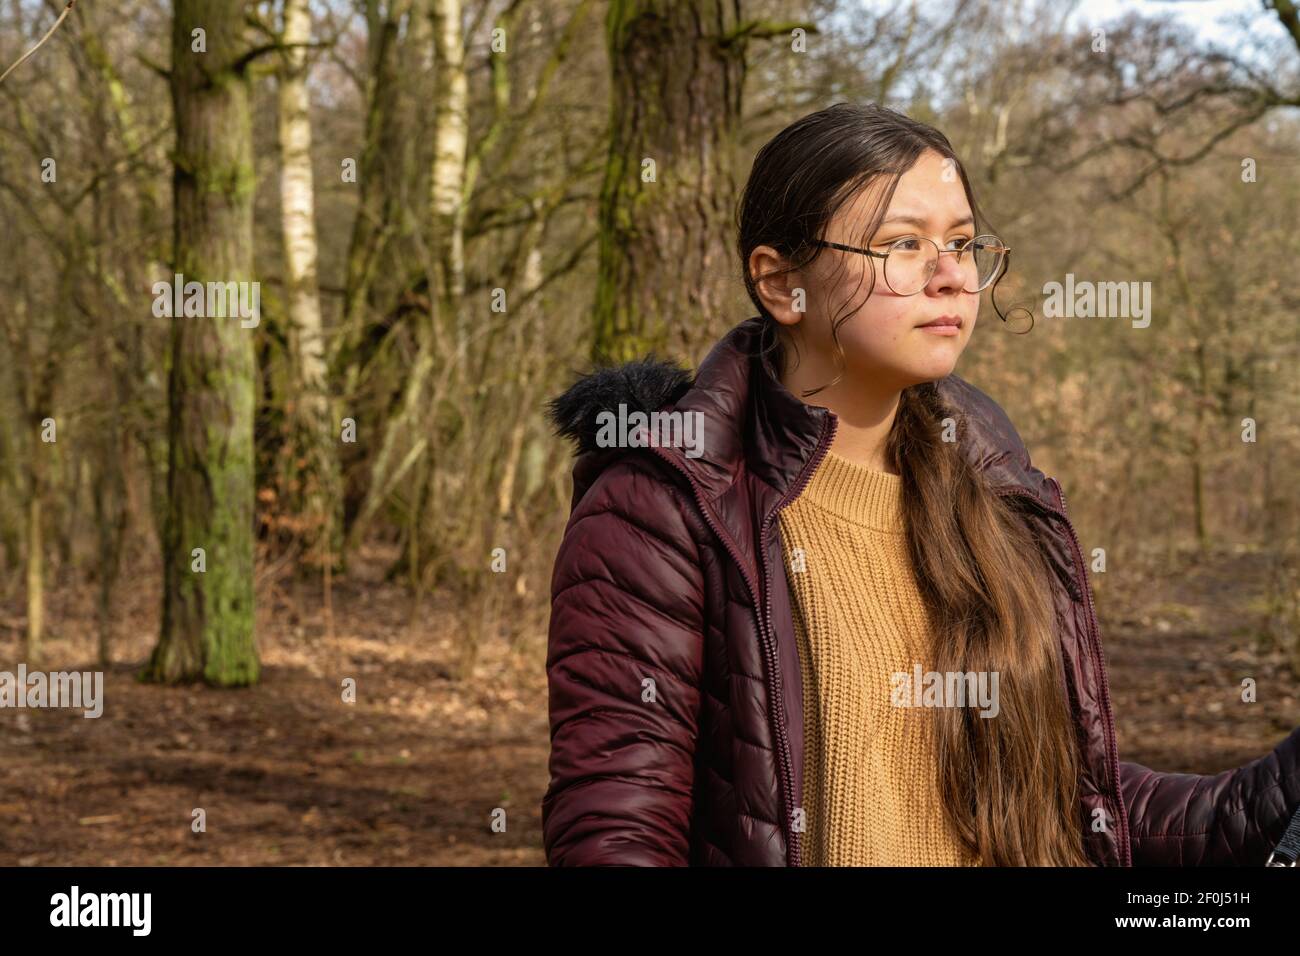 Une adolescente dans une forêt du début du printemps. Arbres et buissons en arrière-plan Banque D'Images